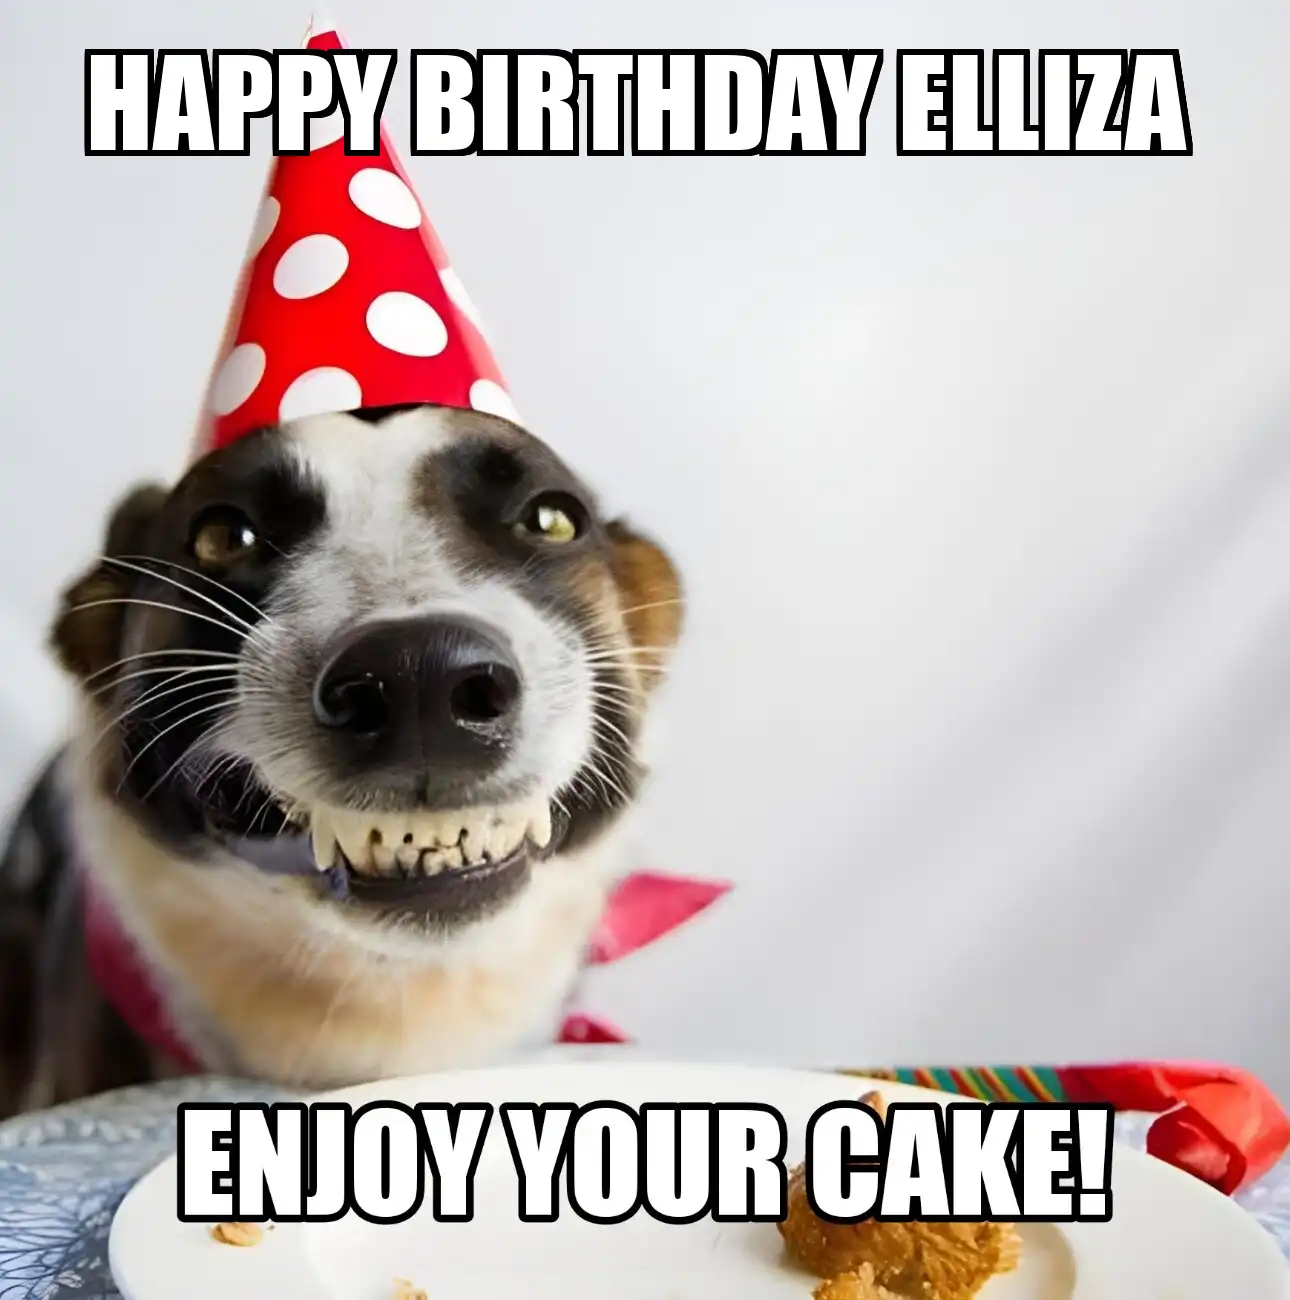 Happy Birthday Elliza Enjoy Your Cake Dog Meme